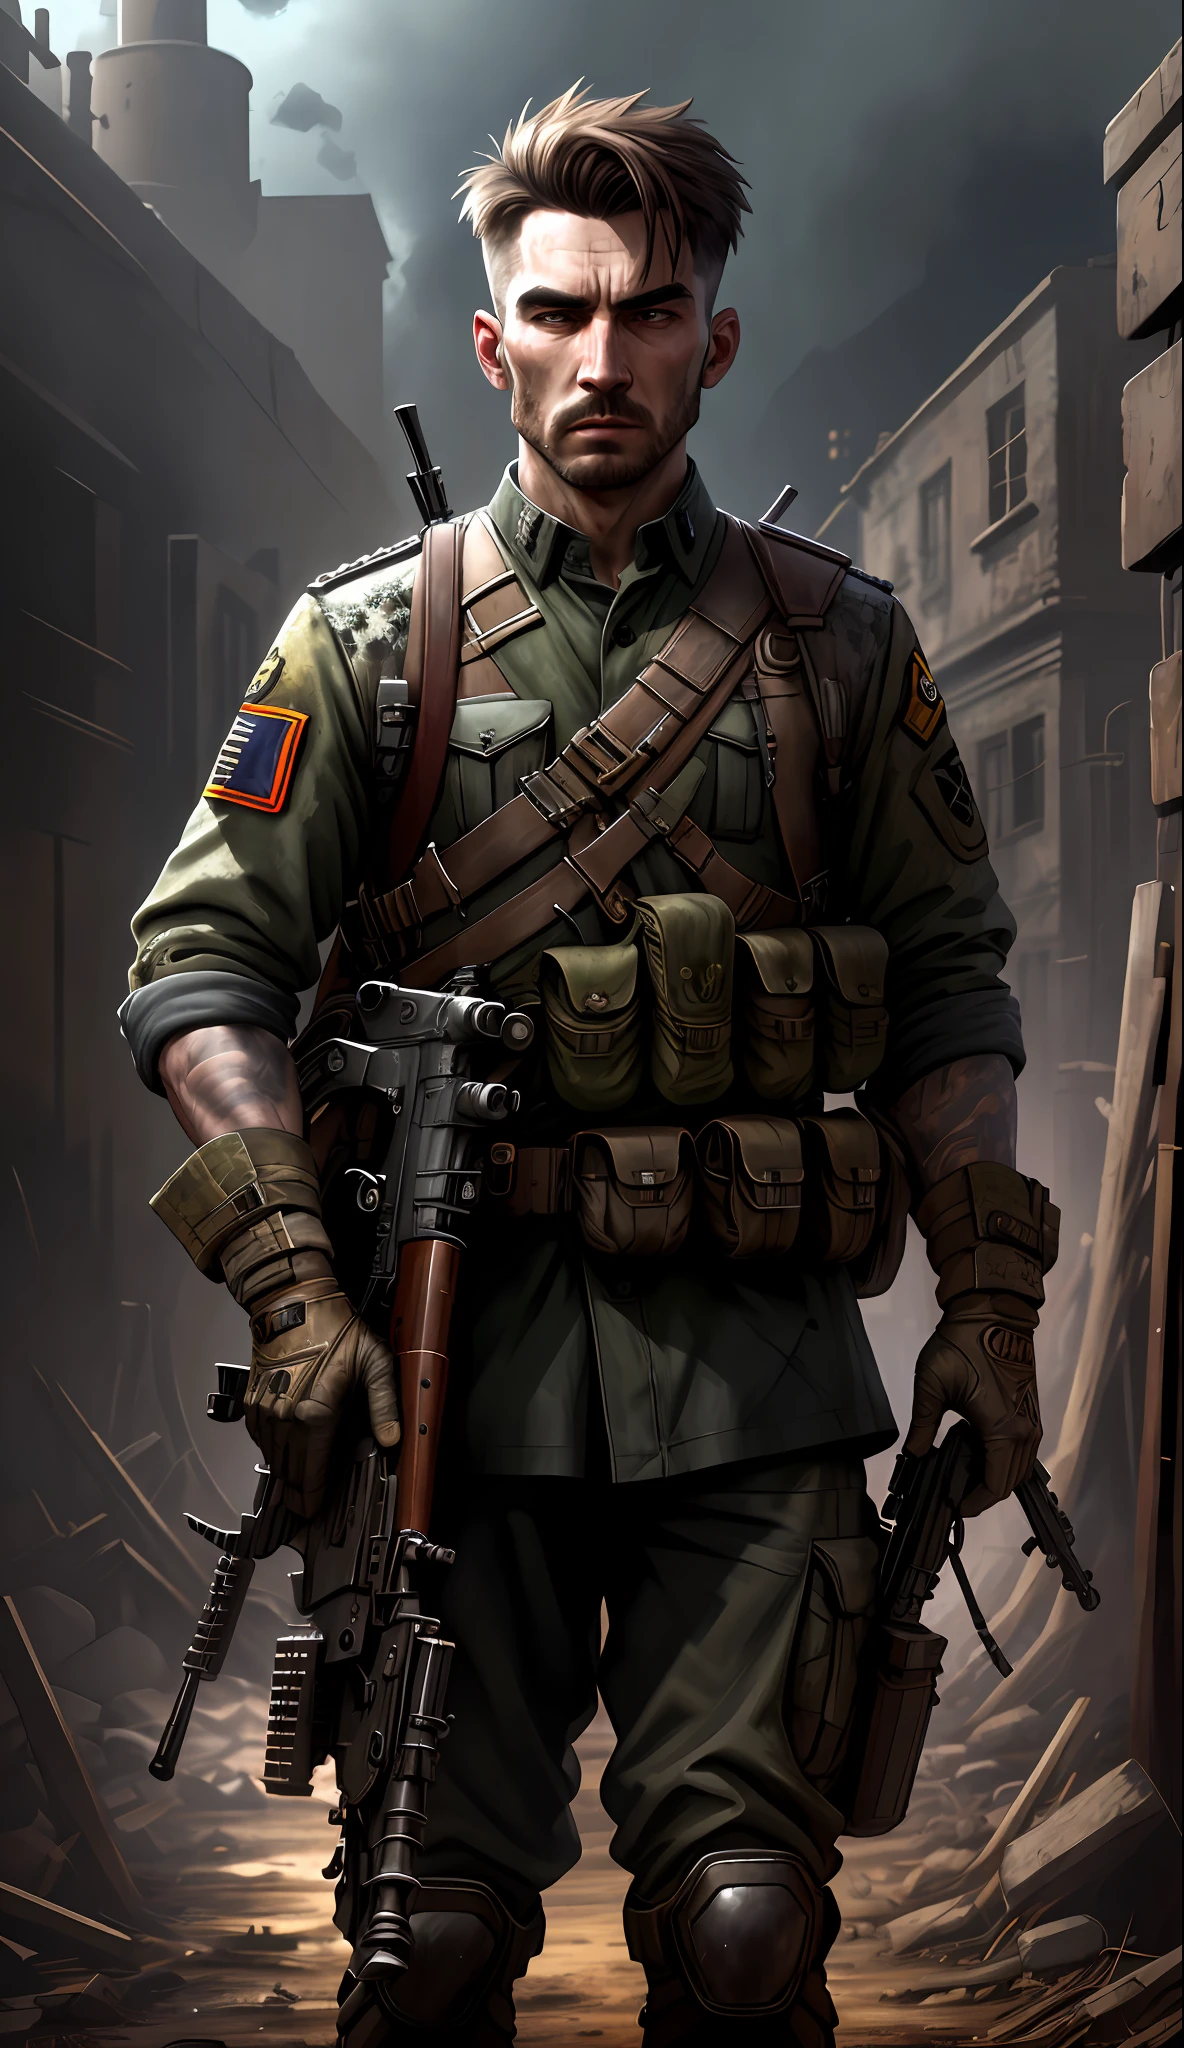 Soldat avec uniforme sombre et fusil, Fond en ruine, Réaliste, élégant, Rutkowski, HDR, détails complexes, hyperdétaillé, Cinématique, lumière de jante, atmosphère dangereuse